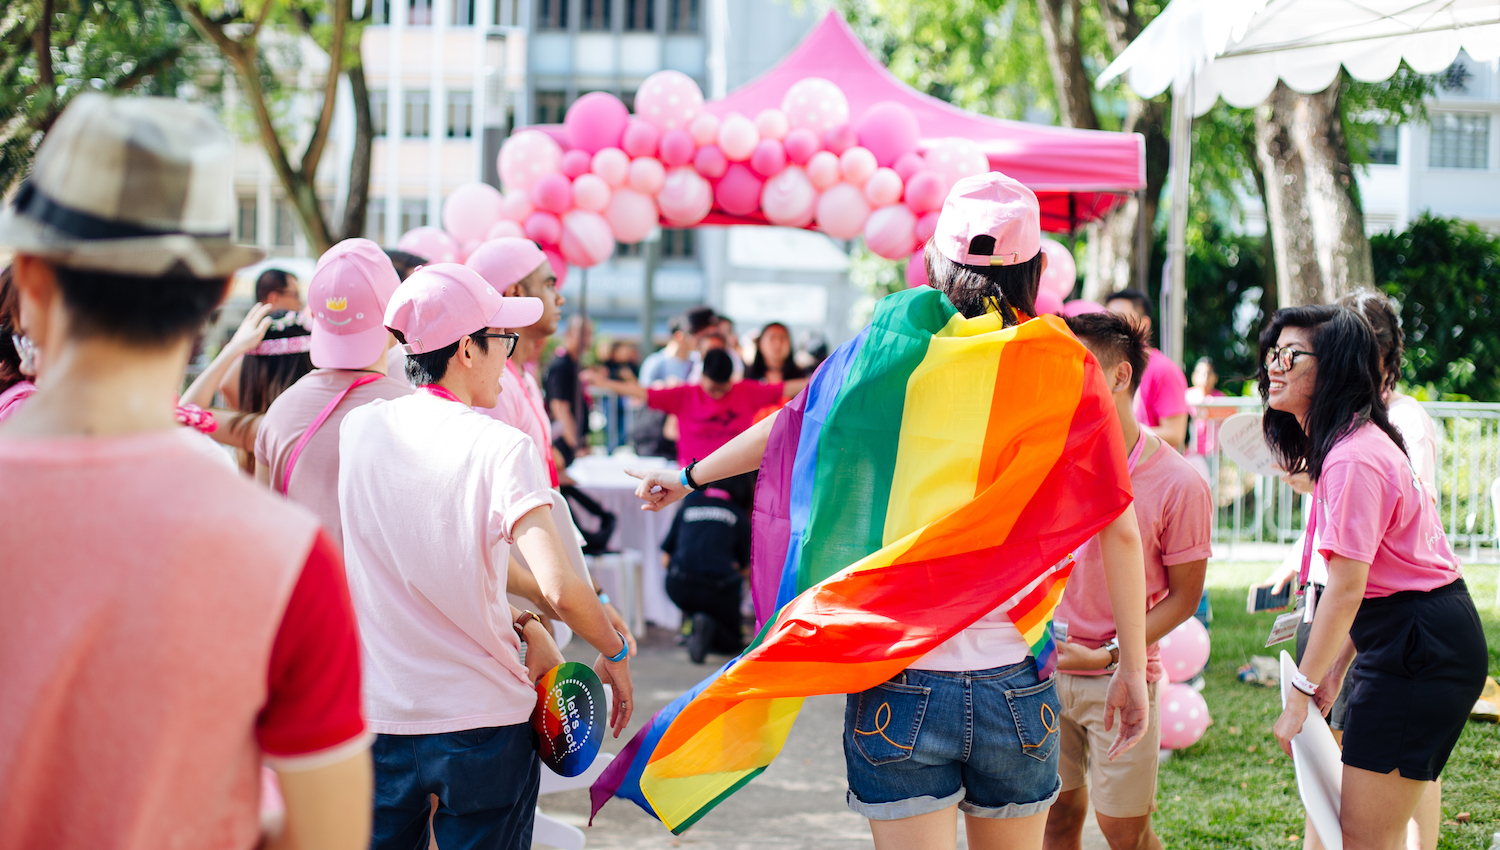 Eşcinsel ilişkiyi suç sayan düzenleme Singapur’da gözden geçiriliyor | Kaos GL - LGBTİ+ Haber Portalı Haber